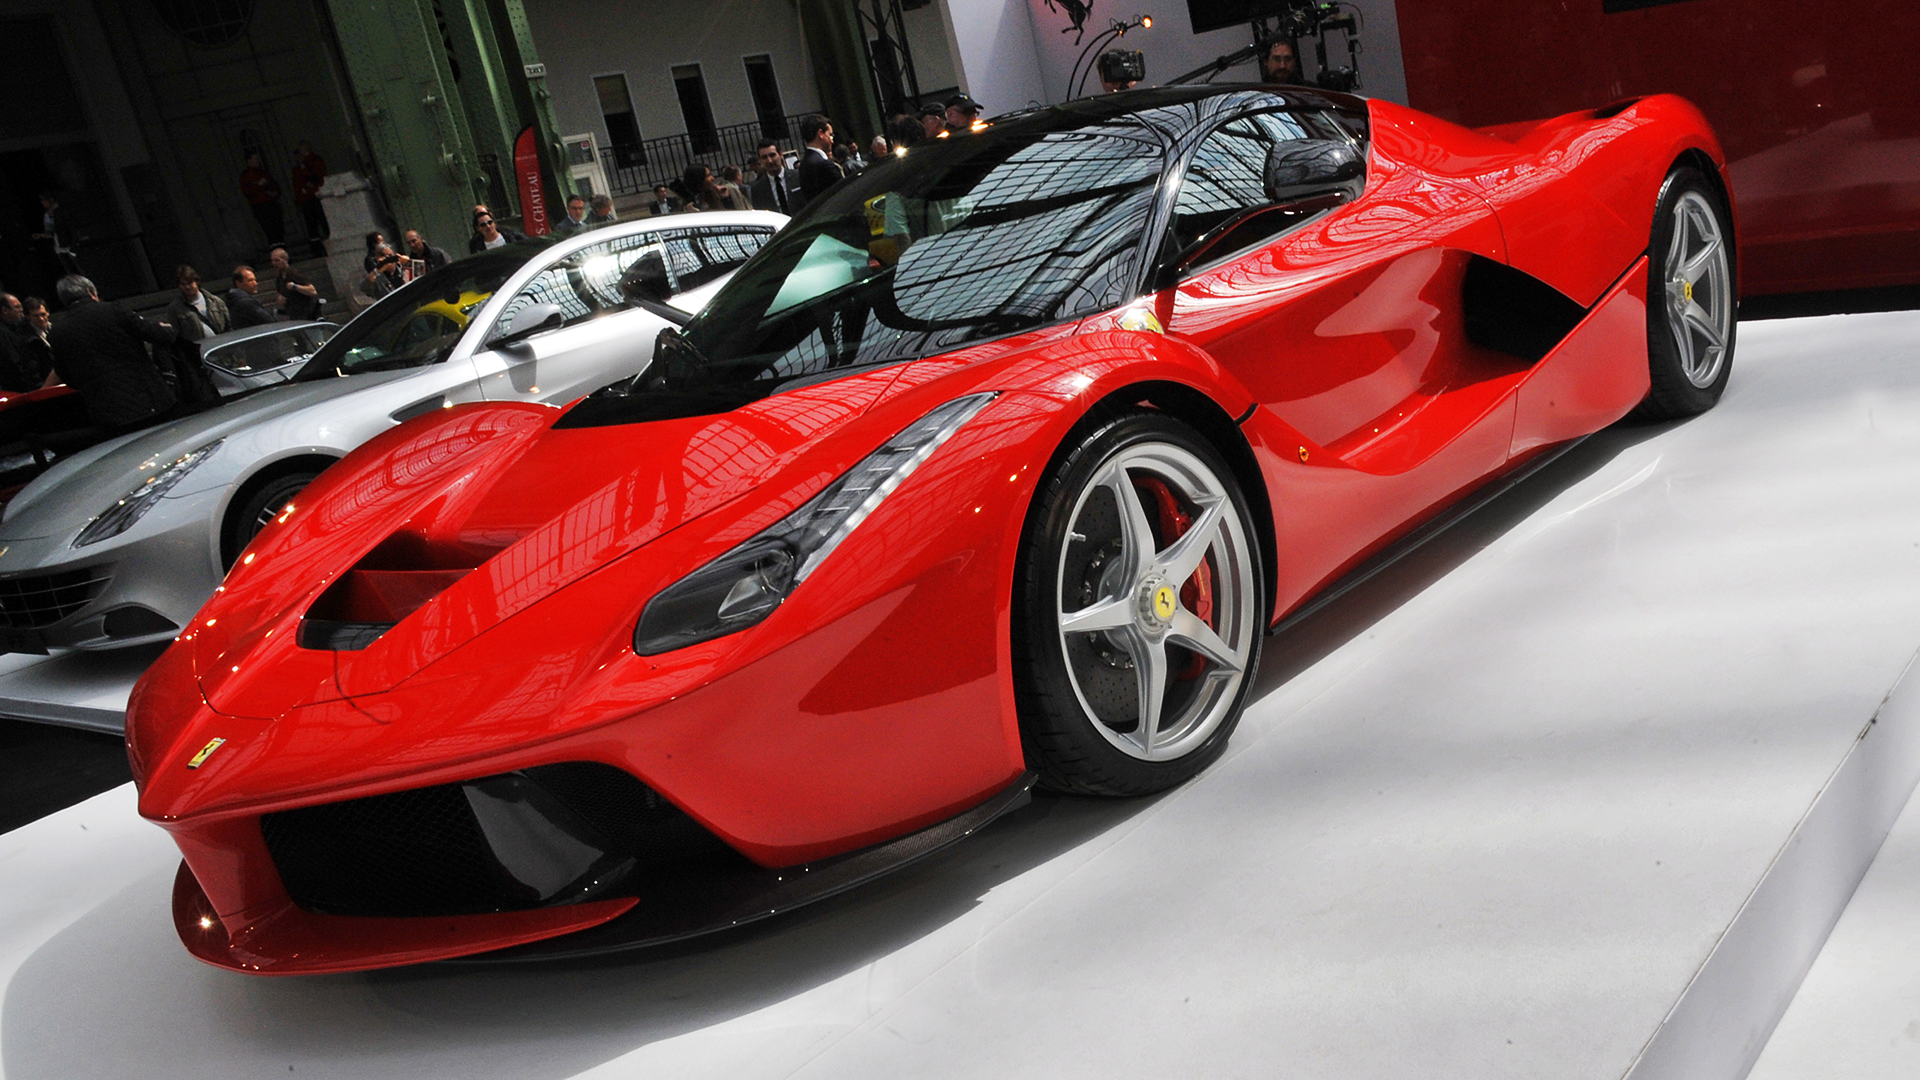 South Africa Will Crush Smuggled Ferrari LaFerrari